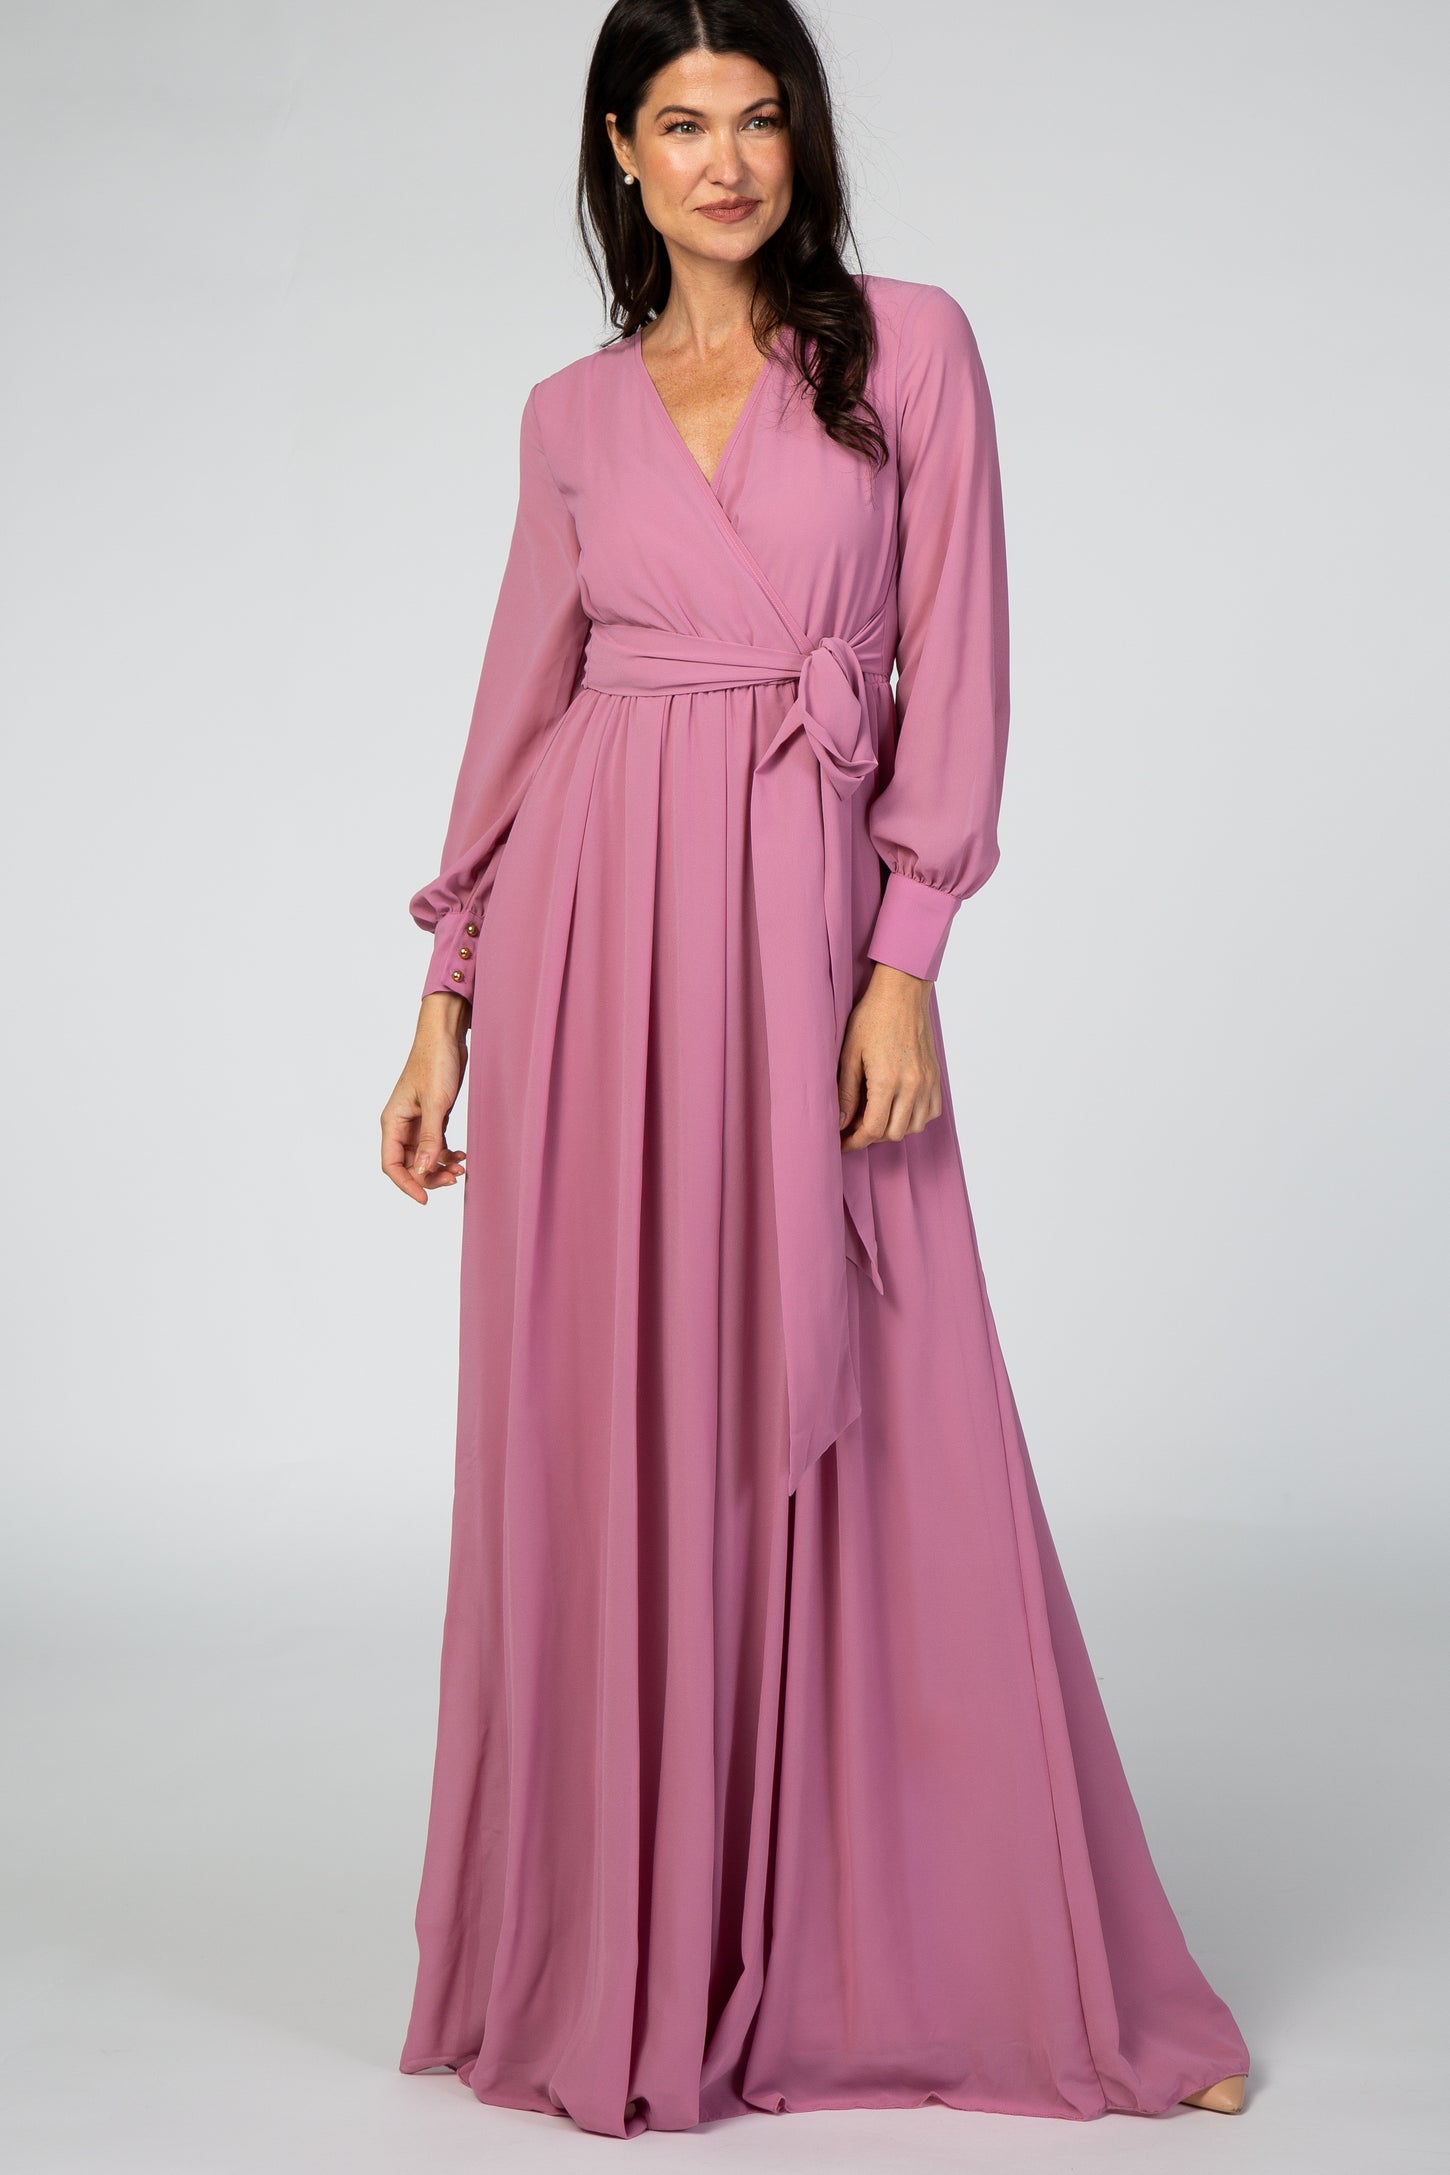 Lavender Chiffon Long Sleeve Maternity Maxi Dress– PinkBlush